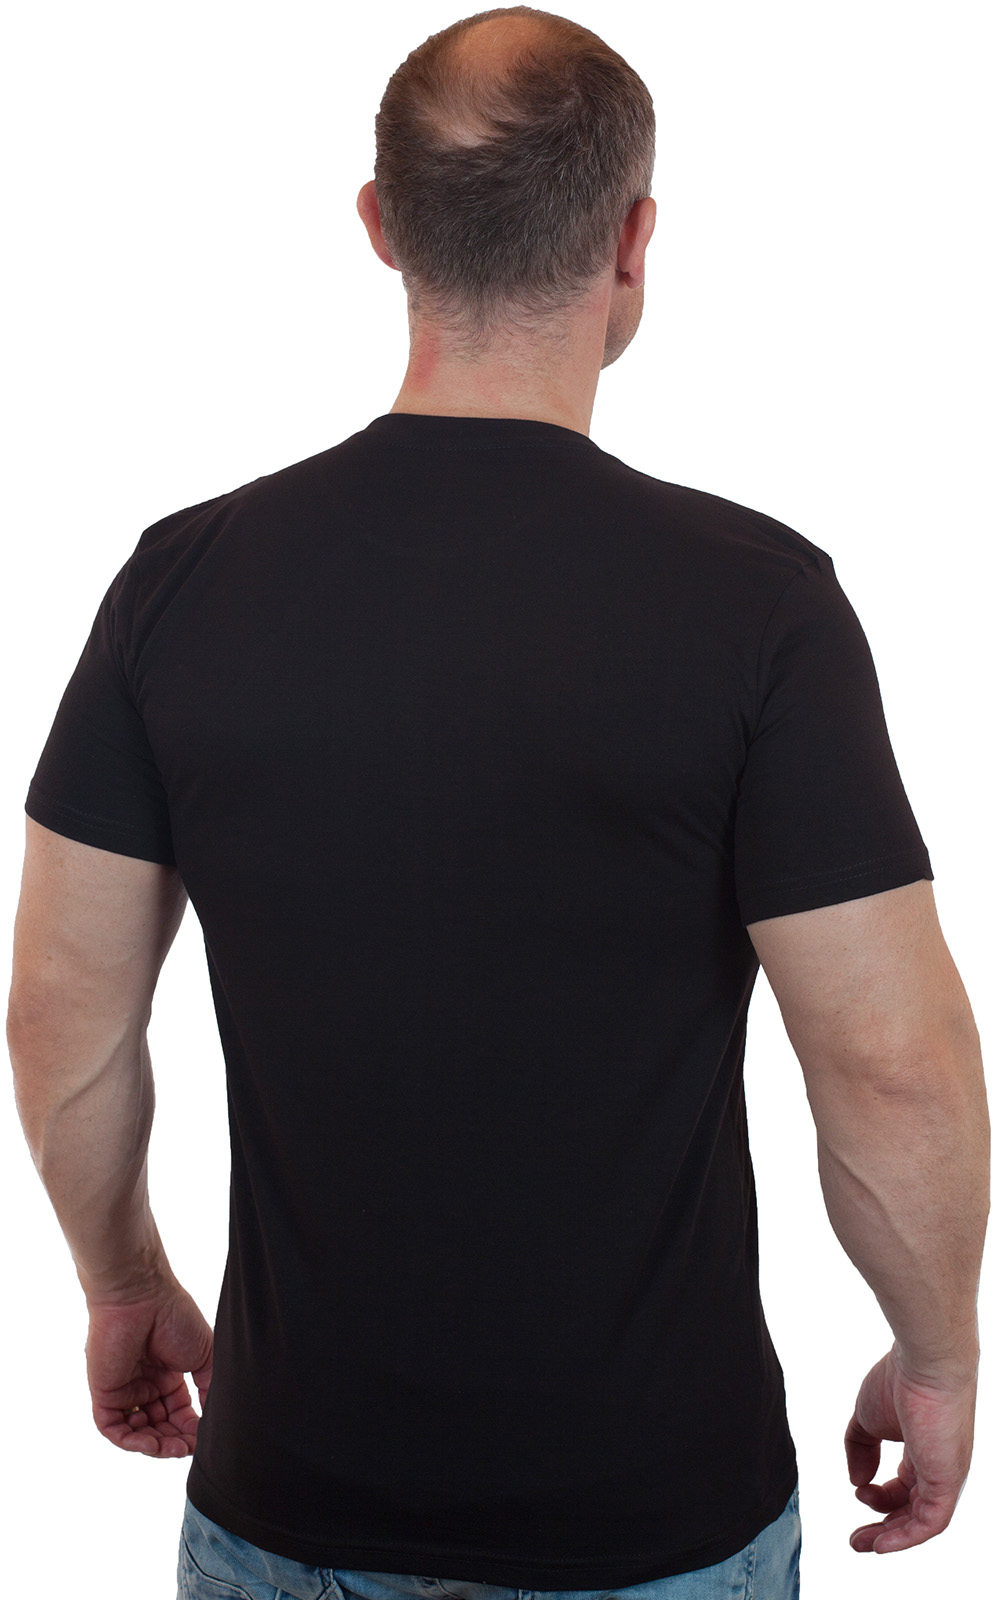 Купить черную мужскую футболку ВДВ с доставкой в ваш город